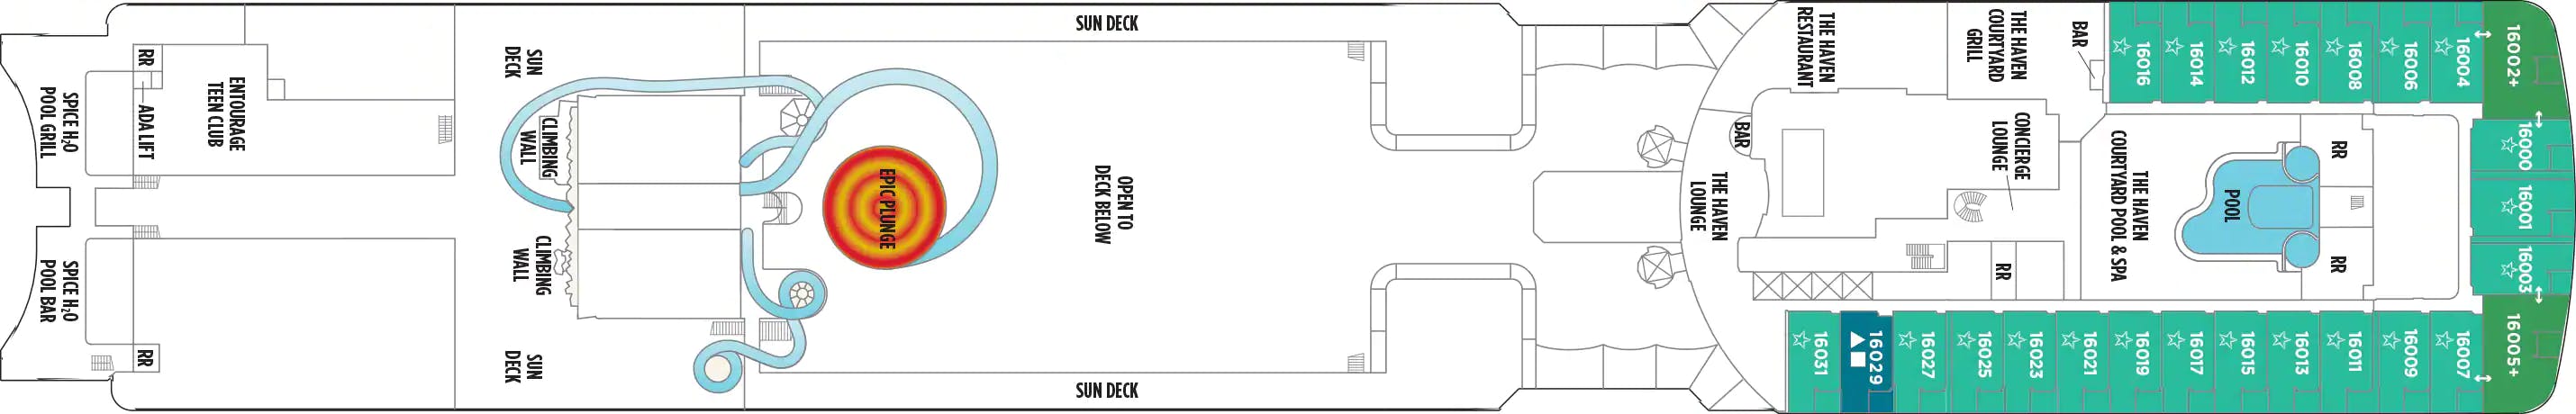 Norwegian Epic - Norwegian Cruise Line - Deck 16 (Deck 16)